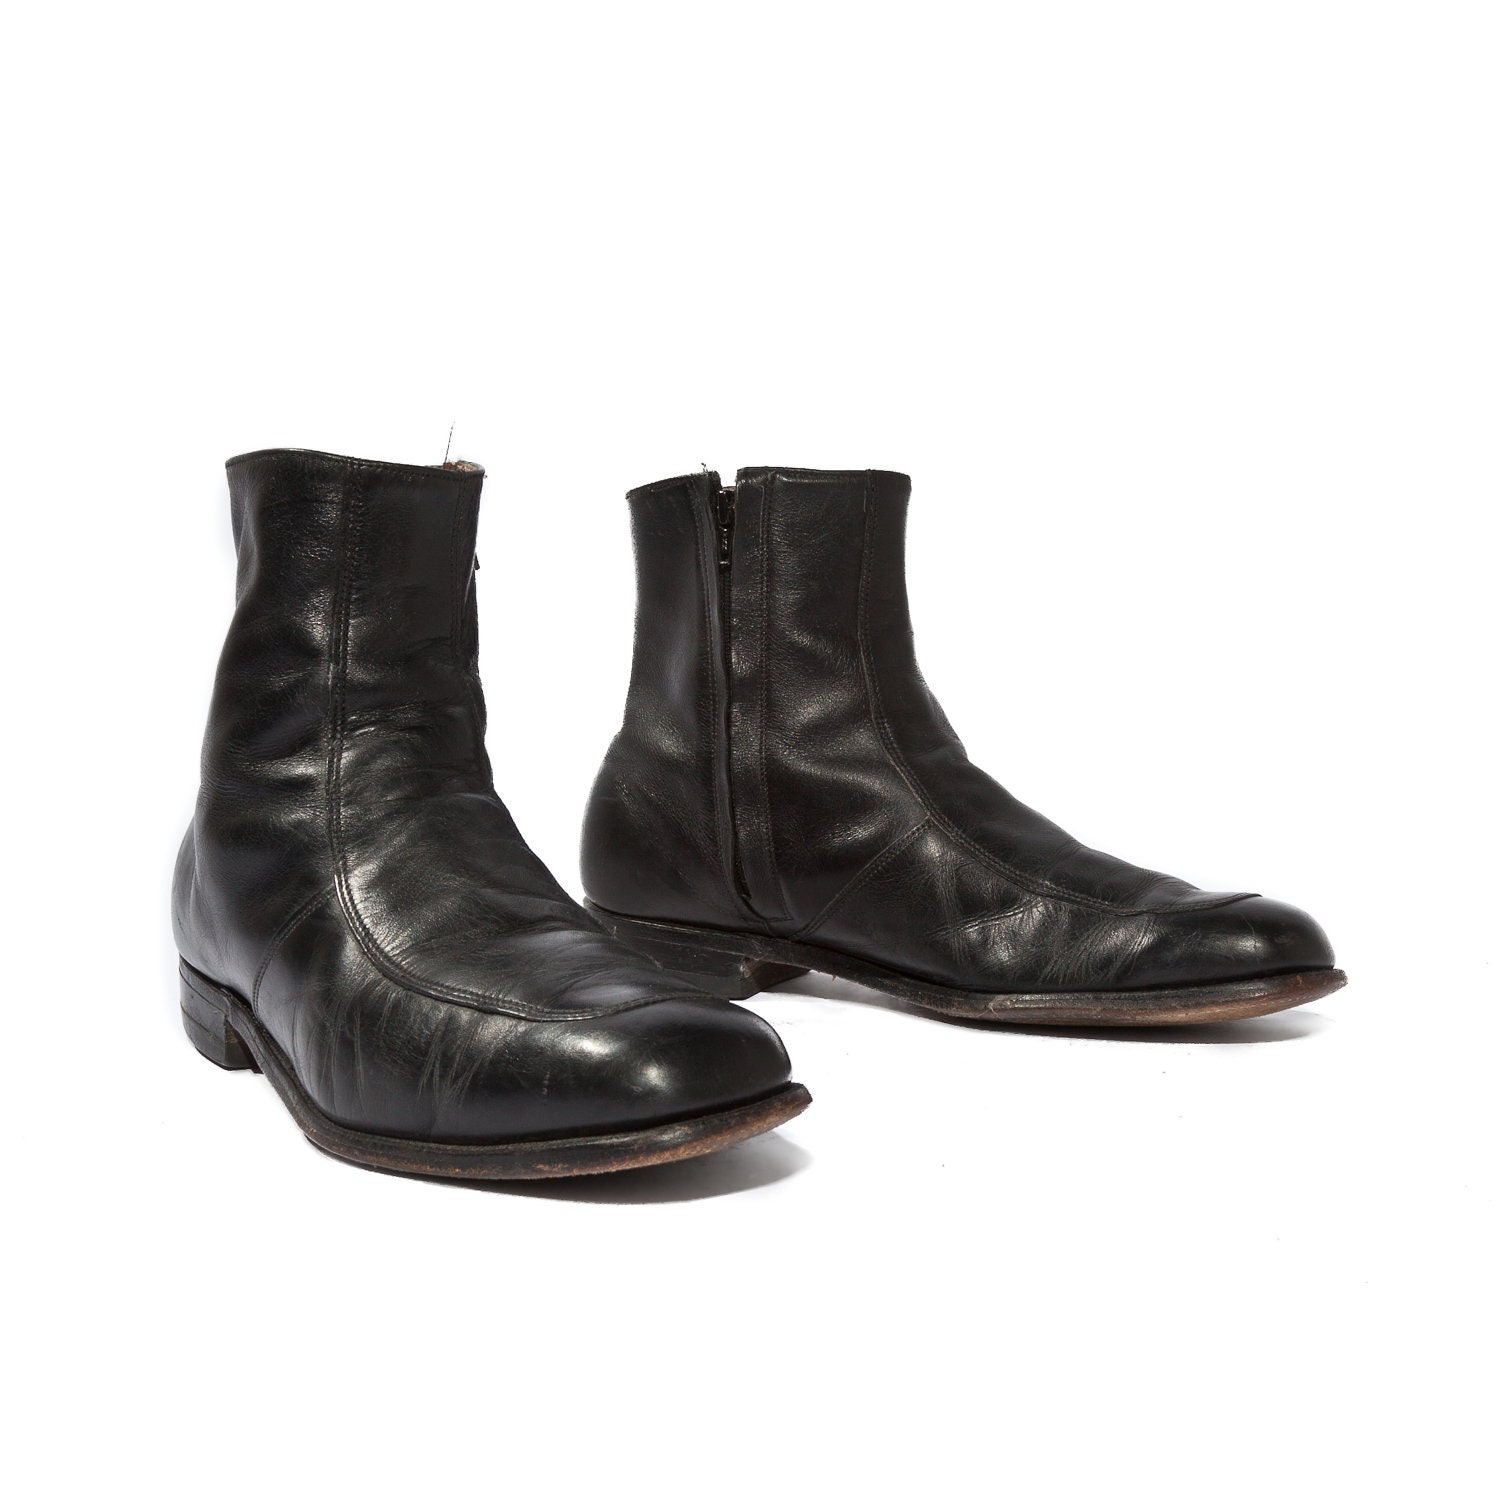 Vintage Men's Beatle Boots Black Leather Ankle Zippers Mod